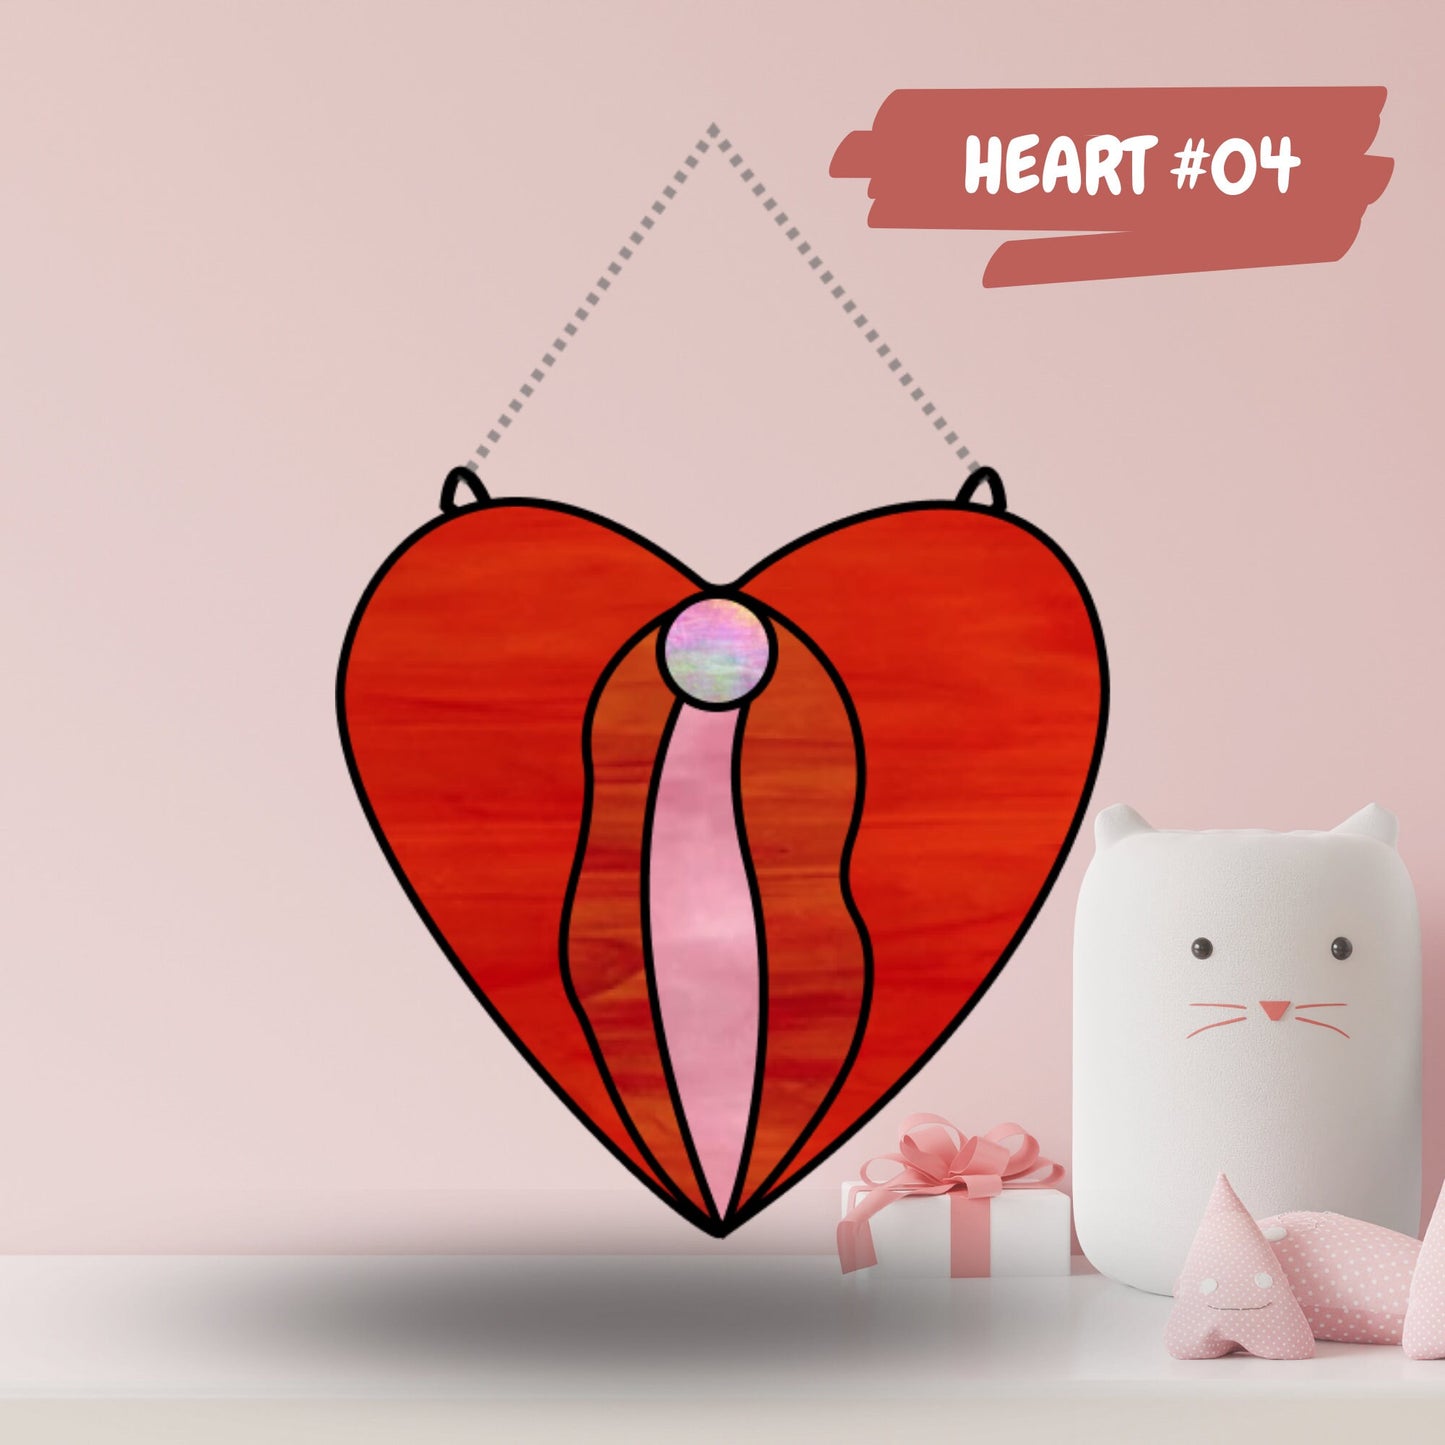 Paquete de patrones de corazones de vidrieras para descargar • Patrones del día de San Valentín